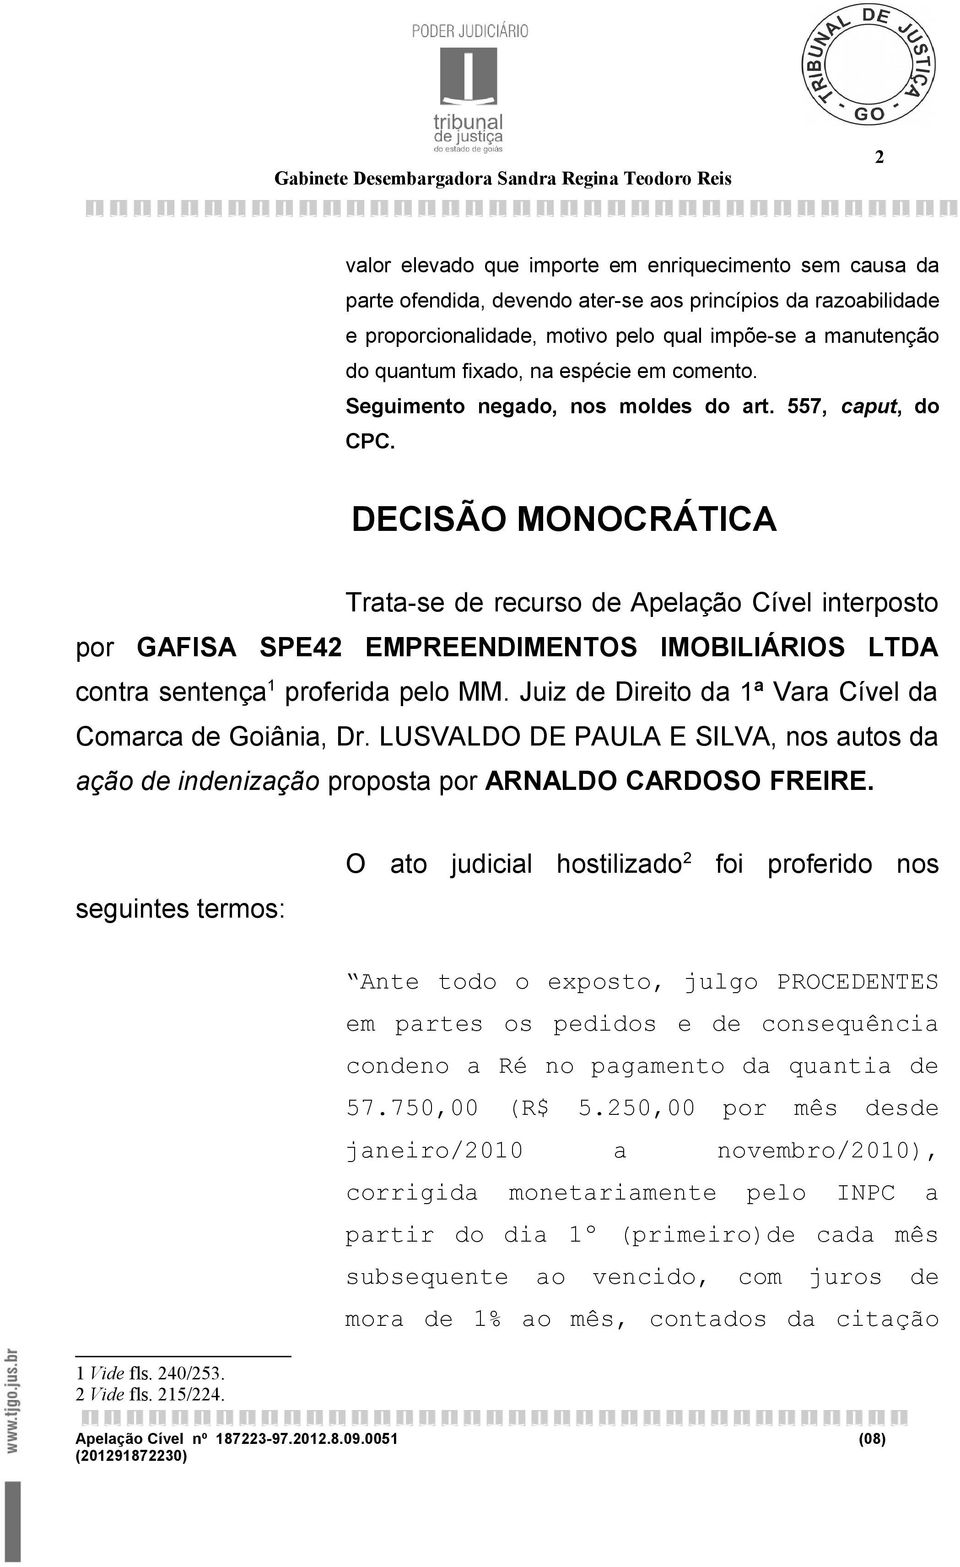 DECISÃO MONOCRÁTICA Trata-se de recurso de Apelação Cível interposto por GAFISA SPE42 EMPREENDIMENTOS IMOBILIÁRIOS LTDA contra sentença 1 proferida pelo MM.